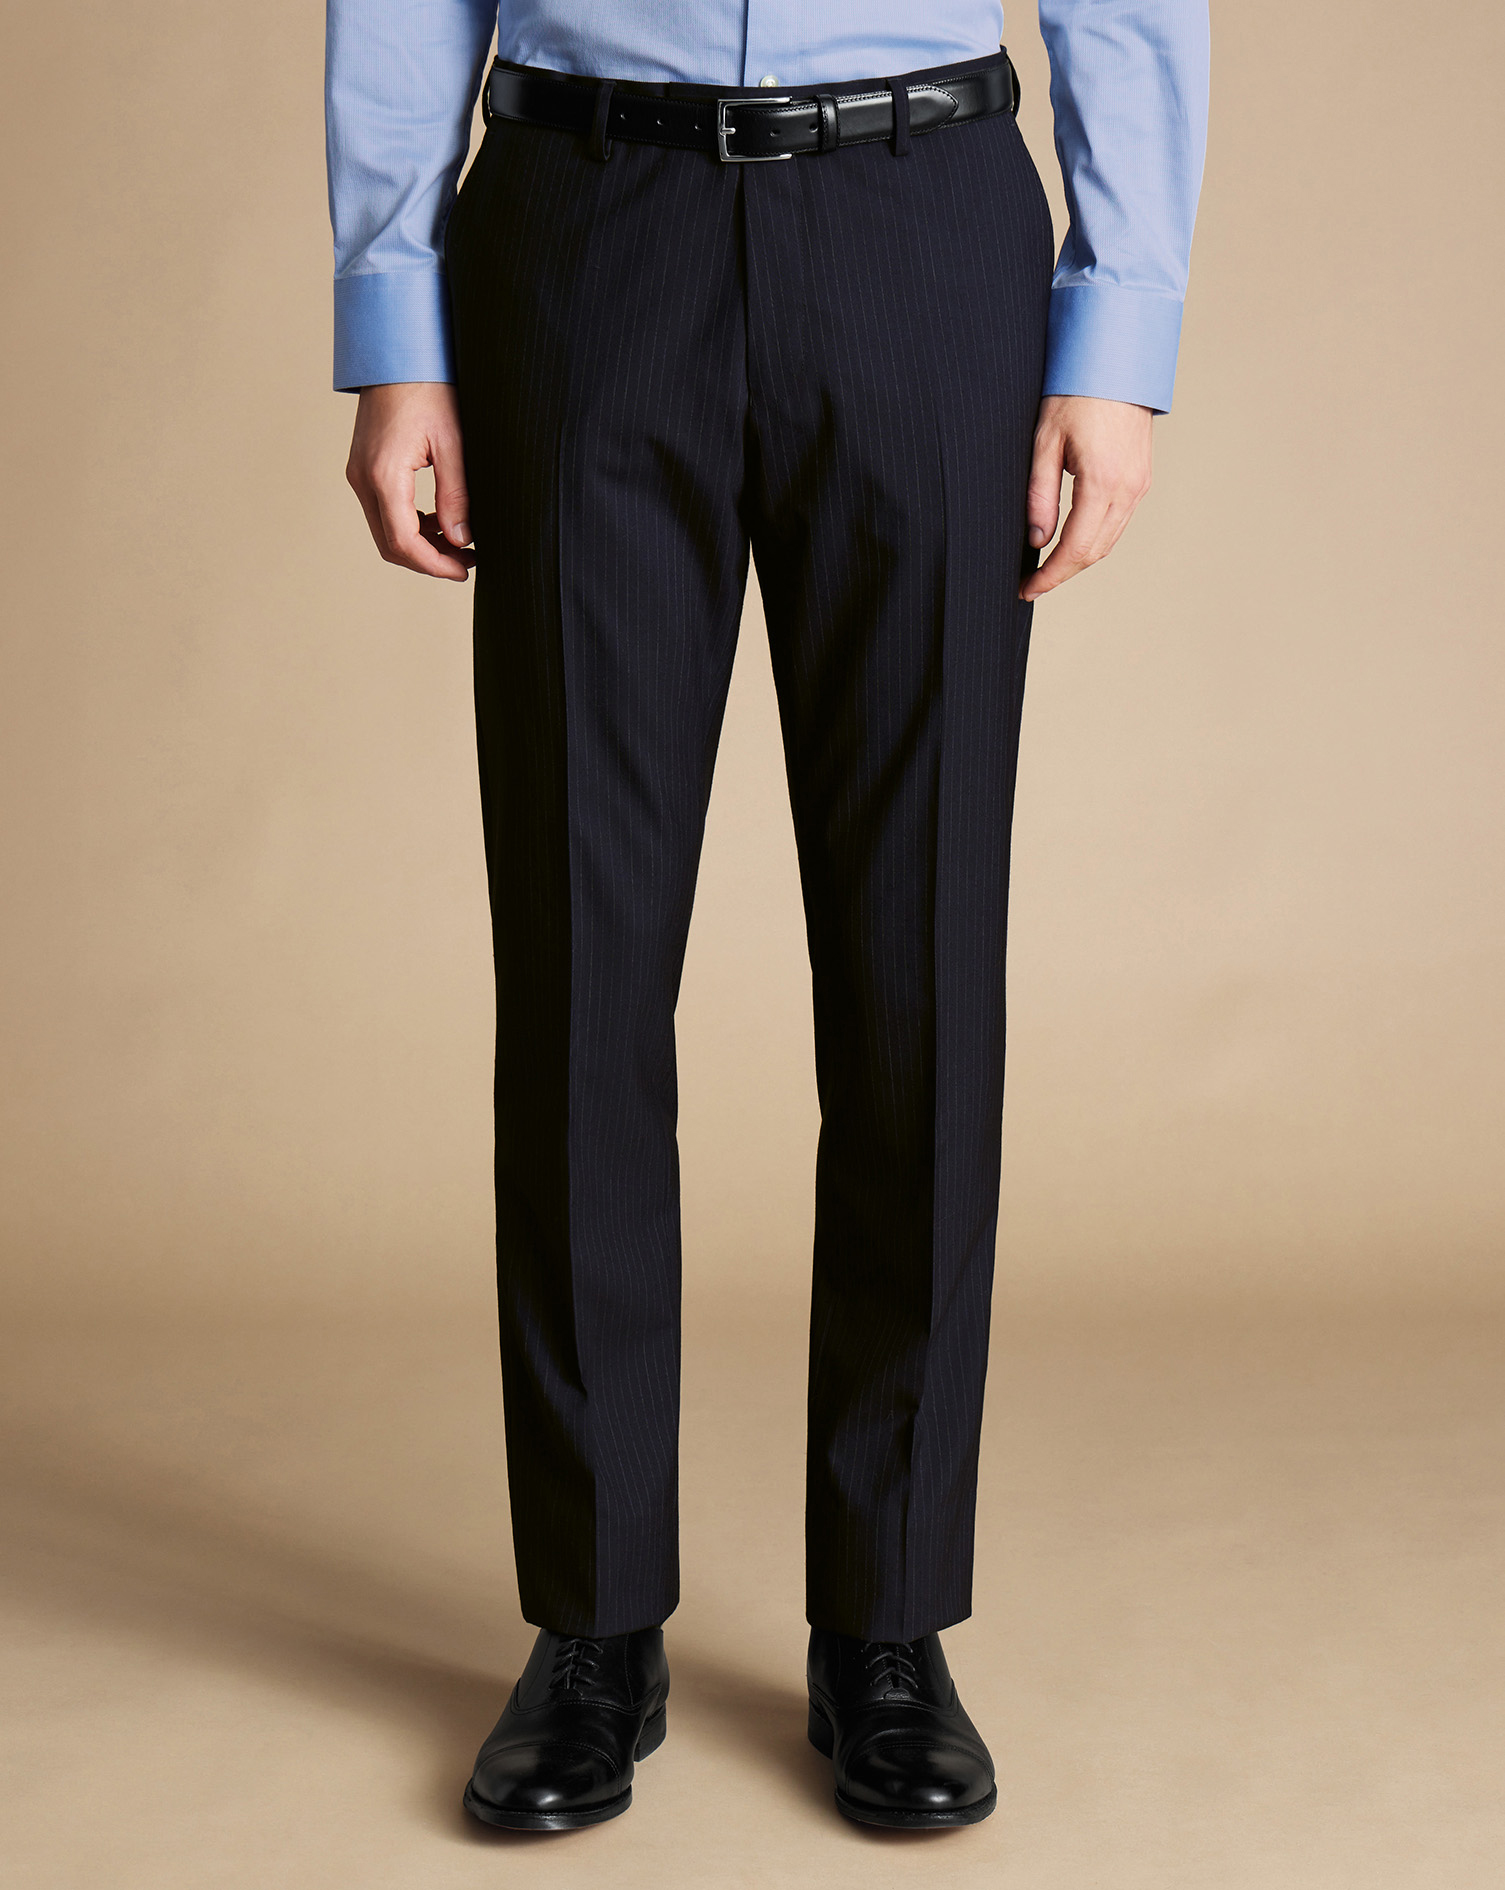 Men's Charles Tyrwhitt Ultimate Performance Stripe Suit Trousers - Dark Navy Size 34/34
